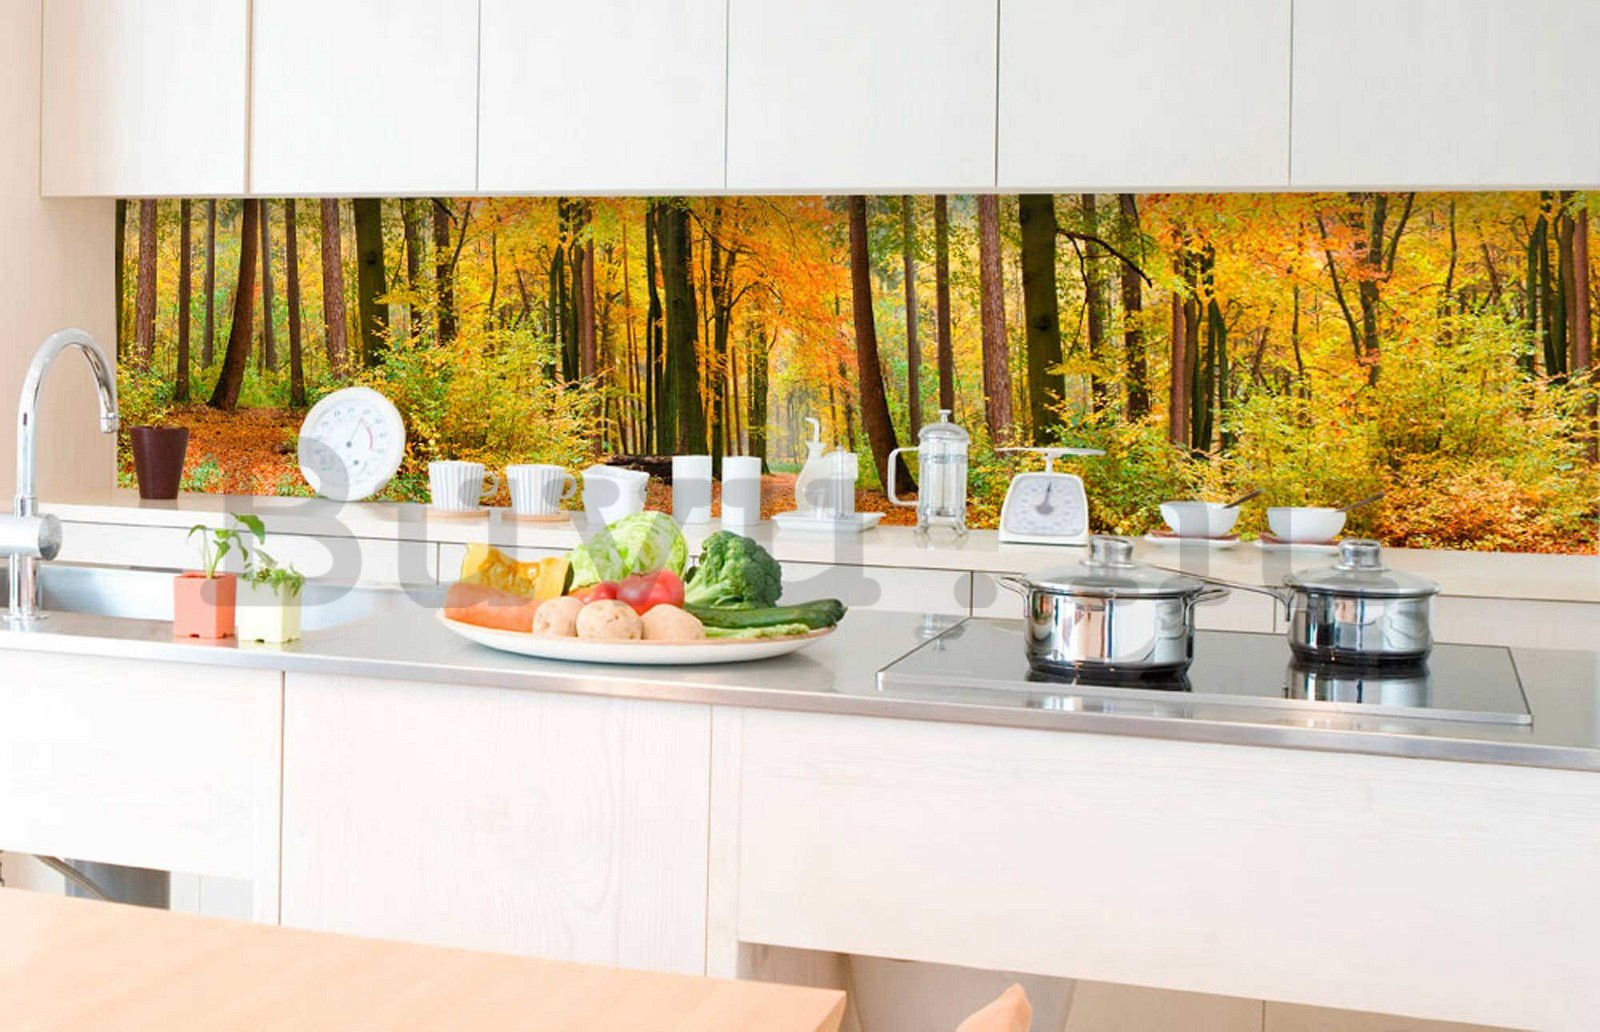 Öntapadós mosható fotótapéta konyhába - Őszi erdő, 350x60 cm